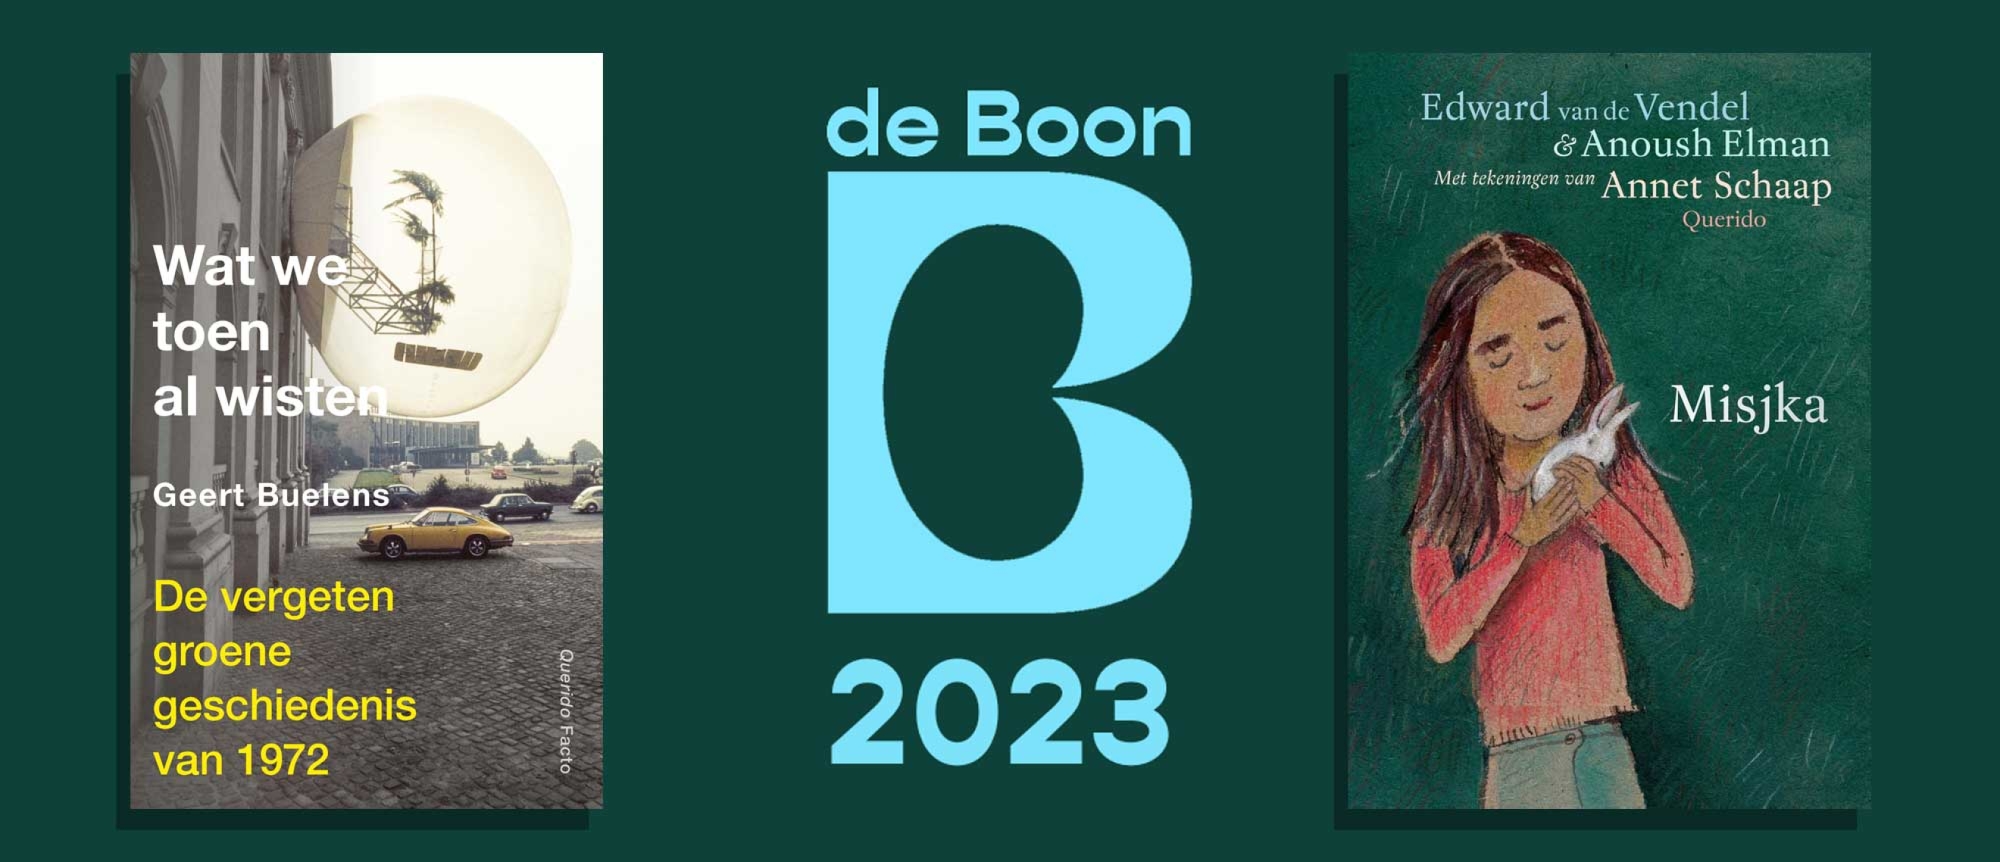 Geert Buelens en Edward van de Vendel winnen de Boon 2023